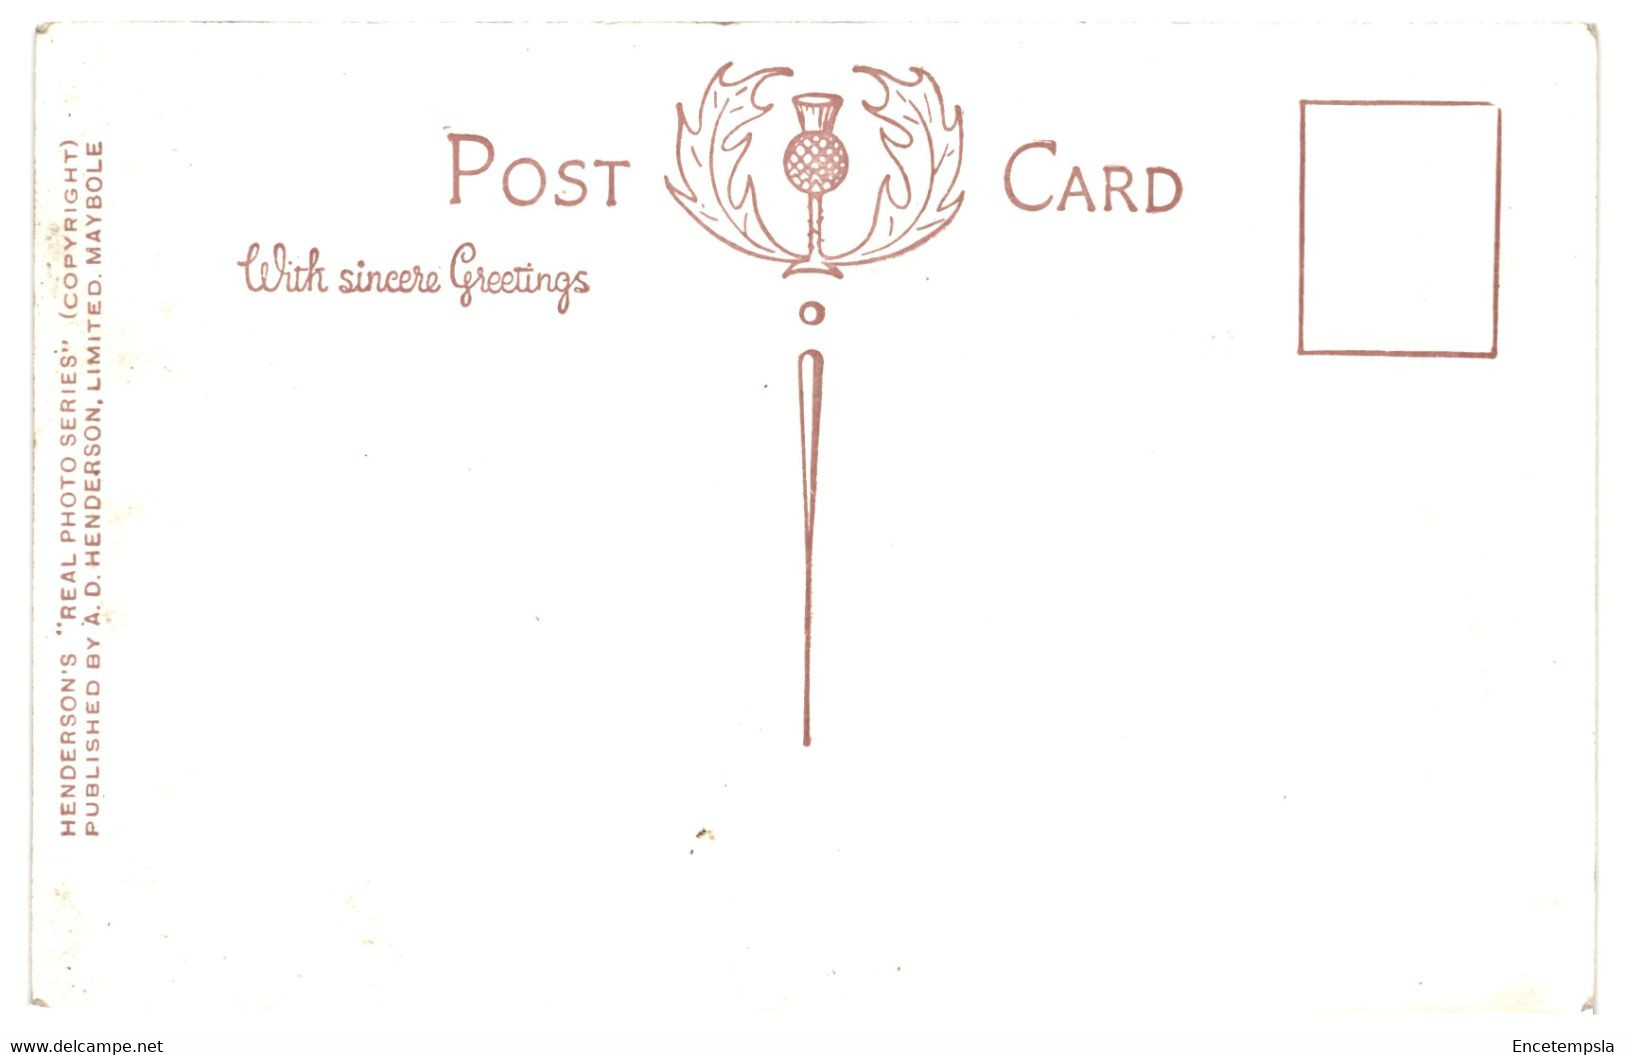 CPA - Carte postale - Lot de 50  cartes postales du Royaume Uni  - VMAngleterre-1